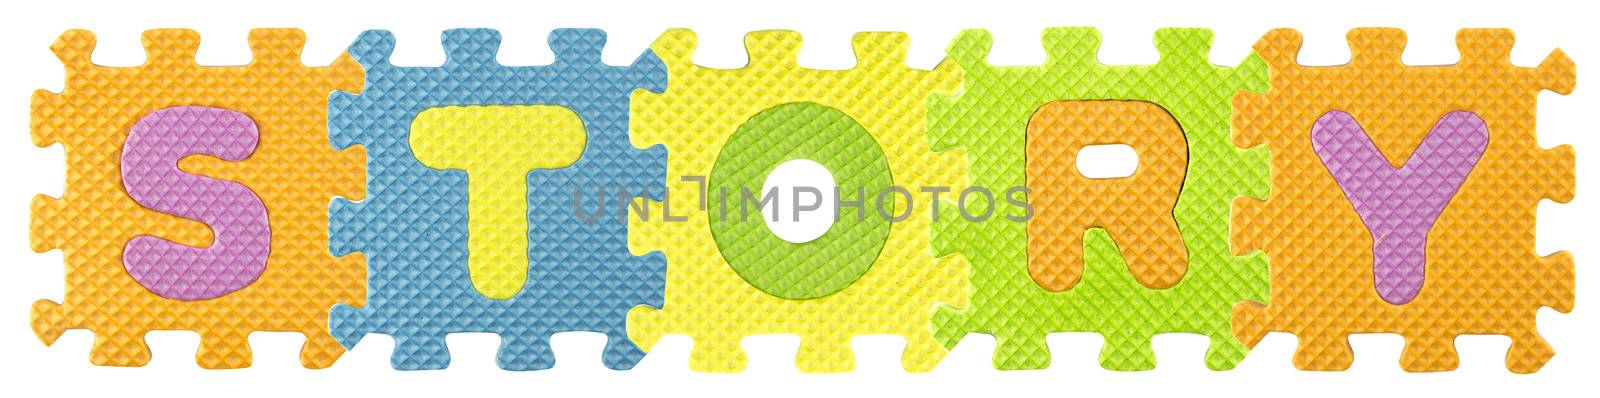 Alphabet puzzle by designsstock